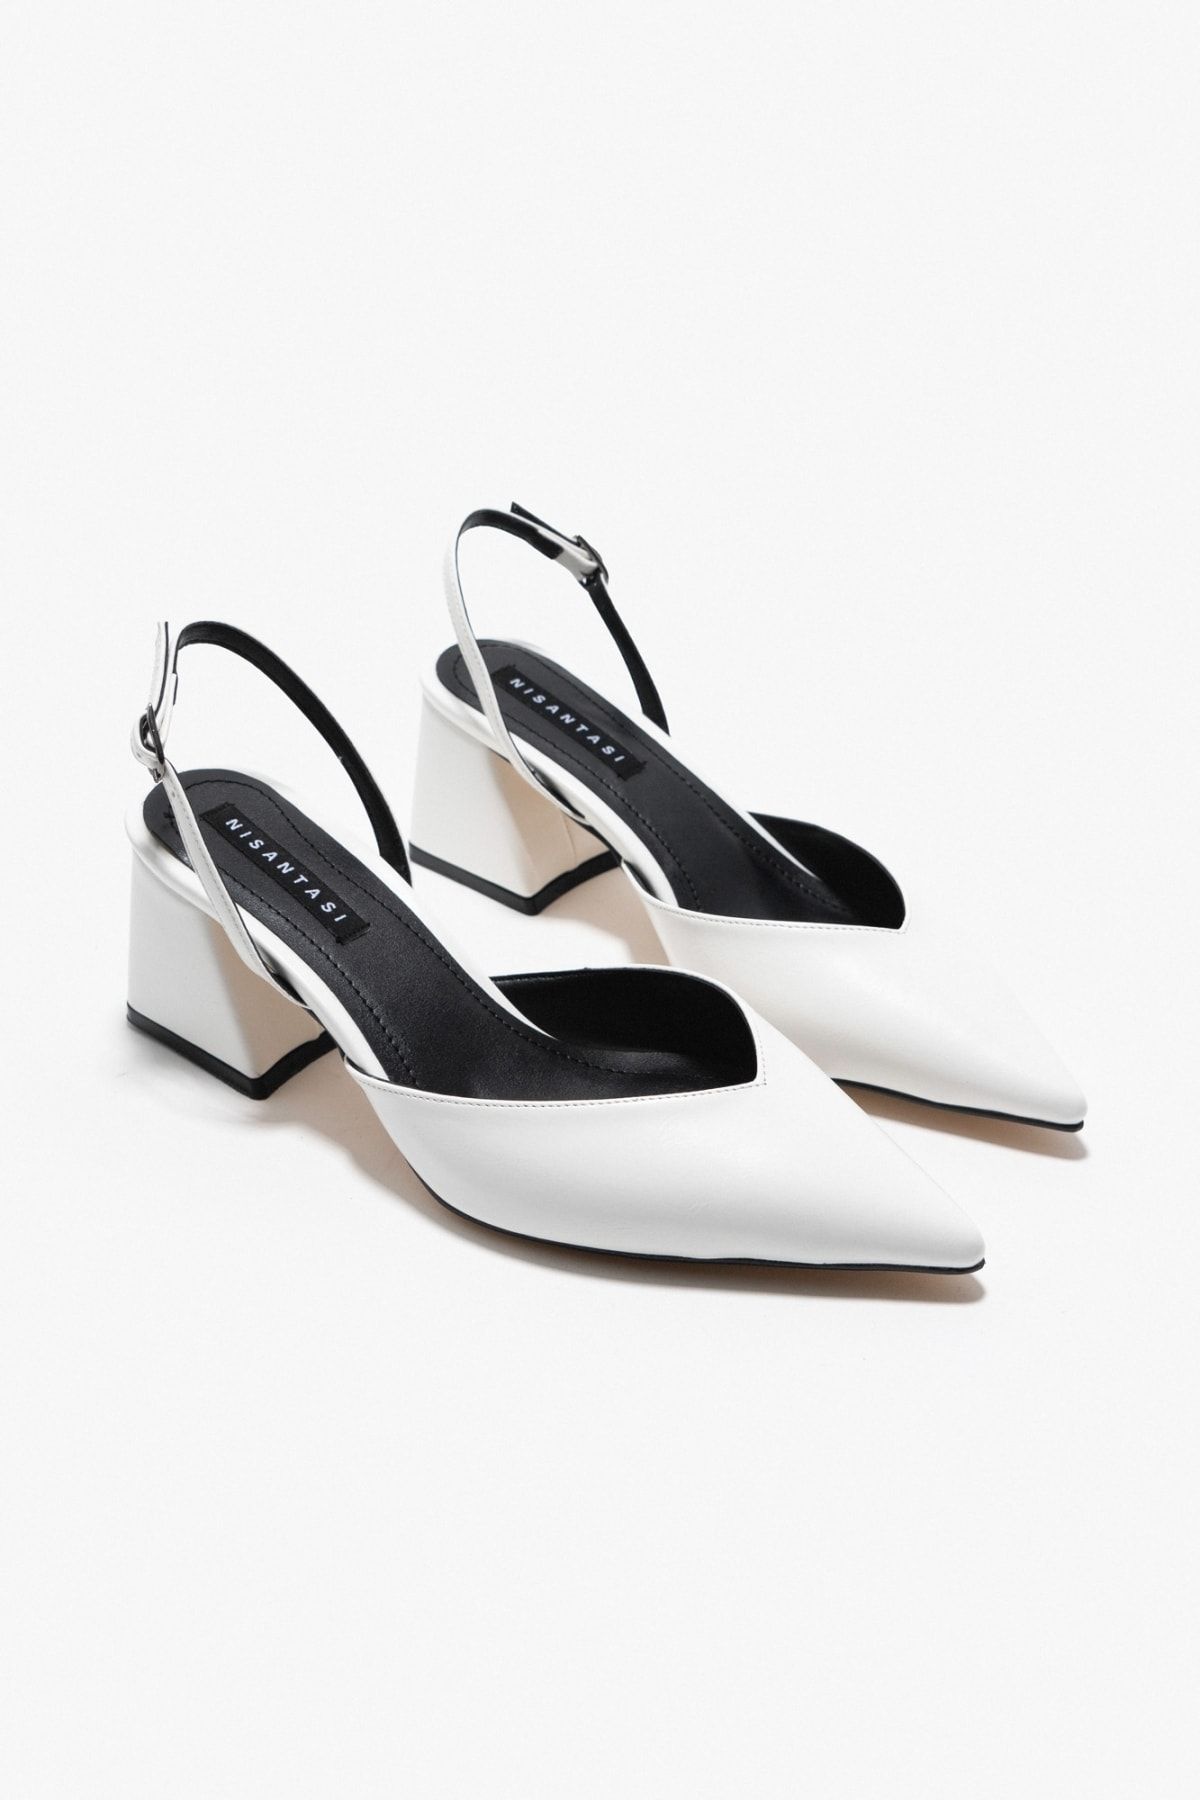 NİŞANTAŞI SHOES Nunu Beyaz Mat Kemer Detay Bilek Bağlı Kadın Topuklu Ayakkabı